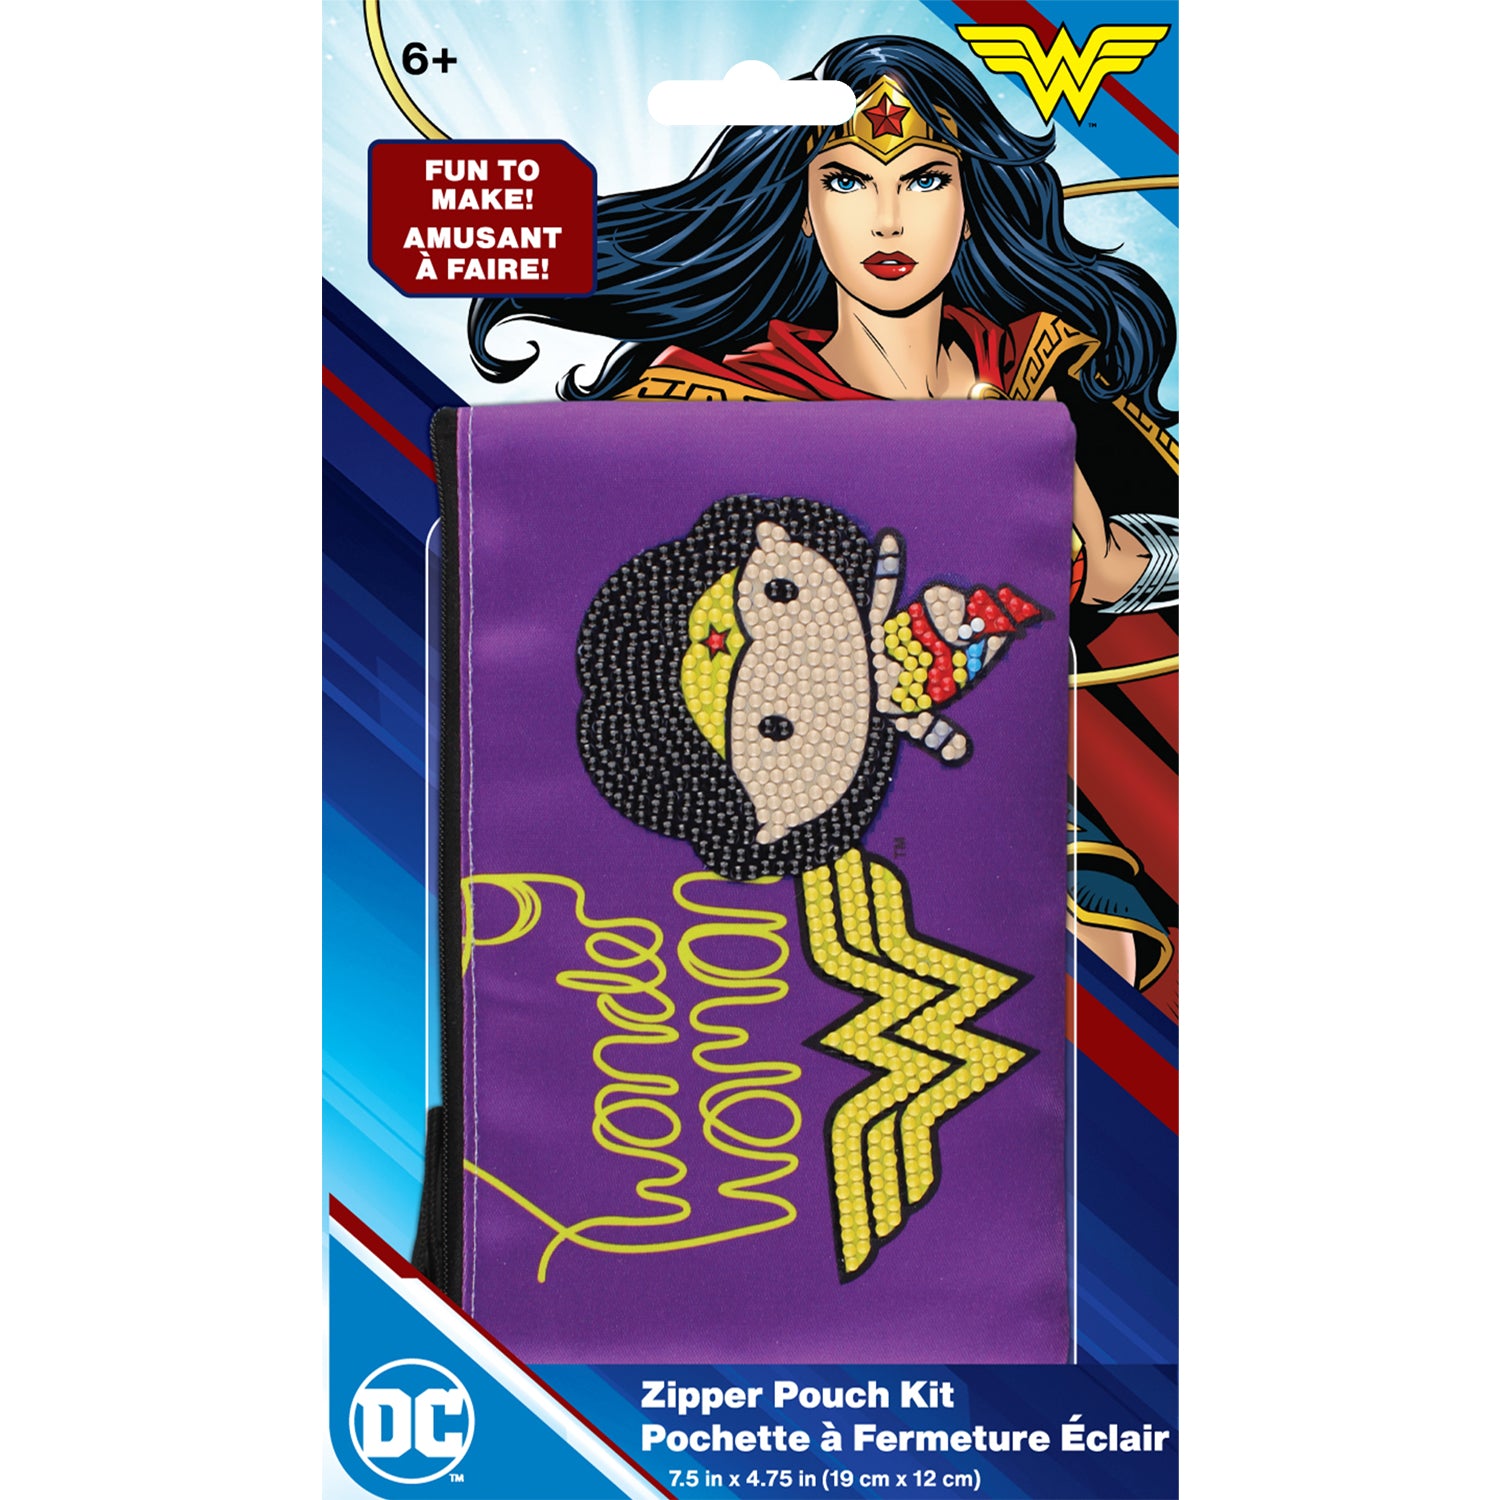 DC Justice League Wonder Woman Pose Zip Pouch Kit